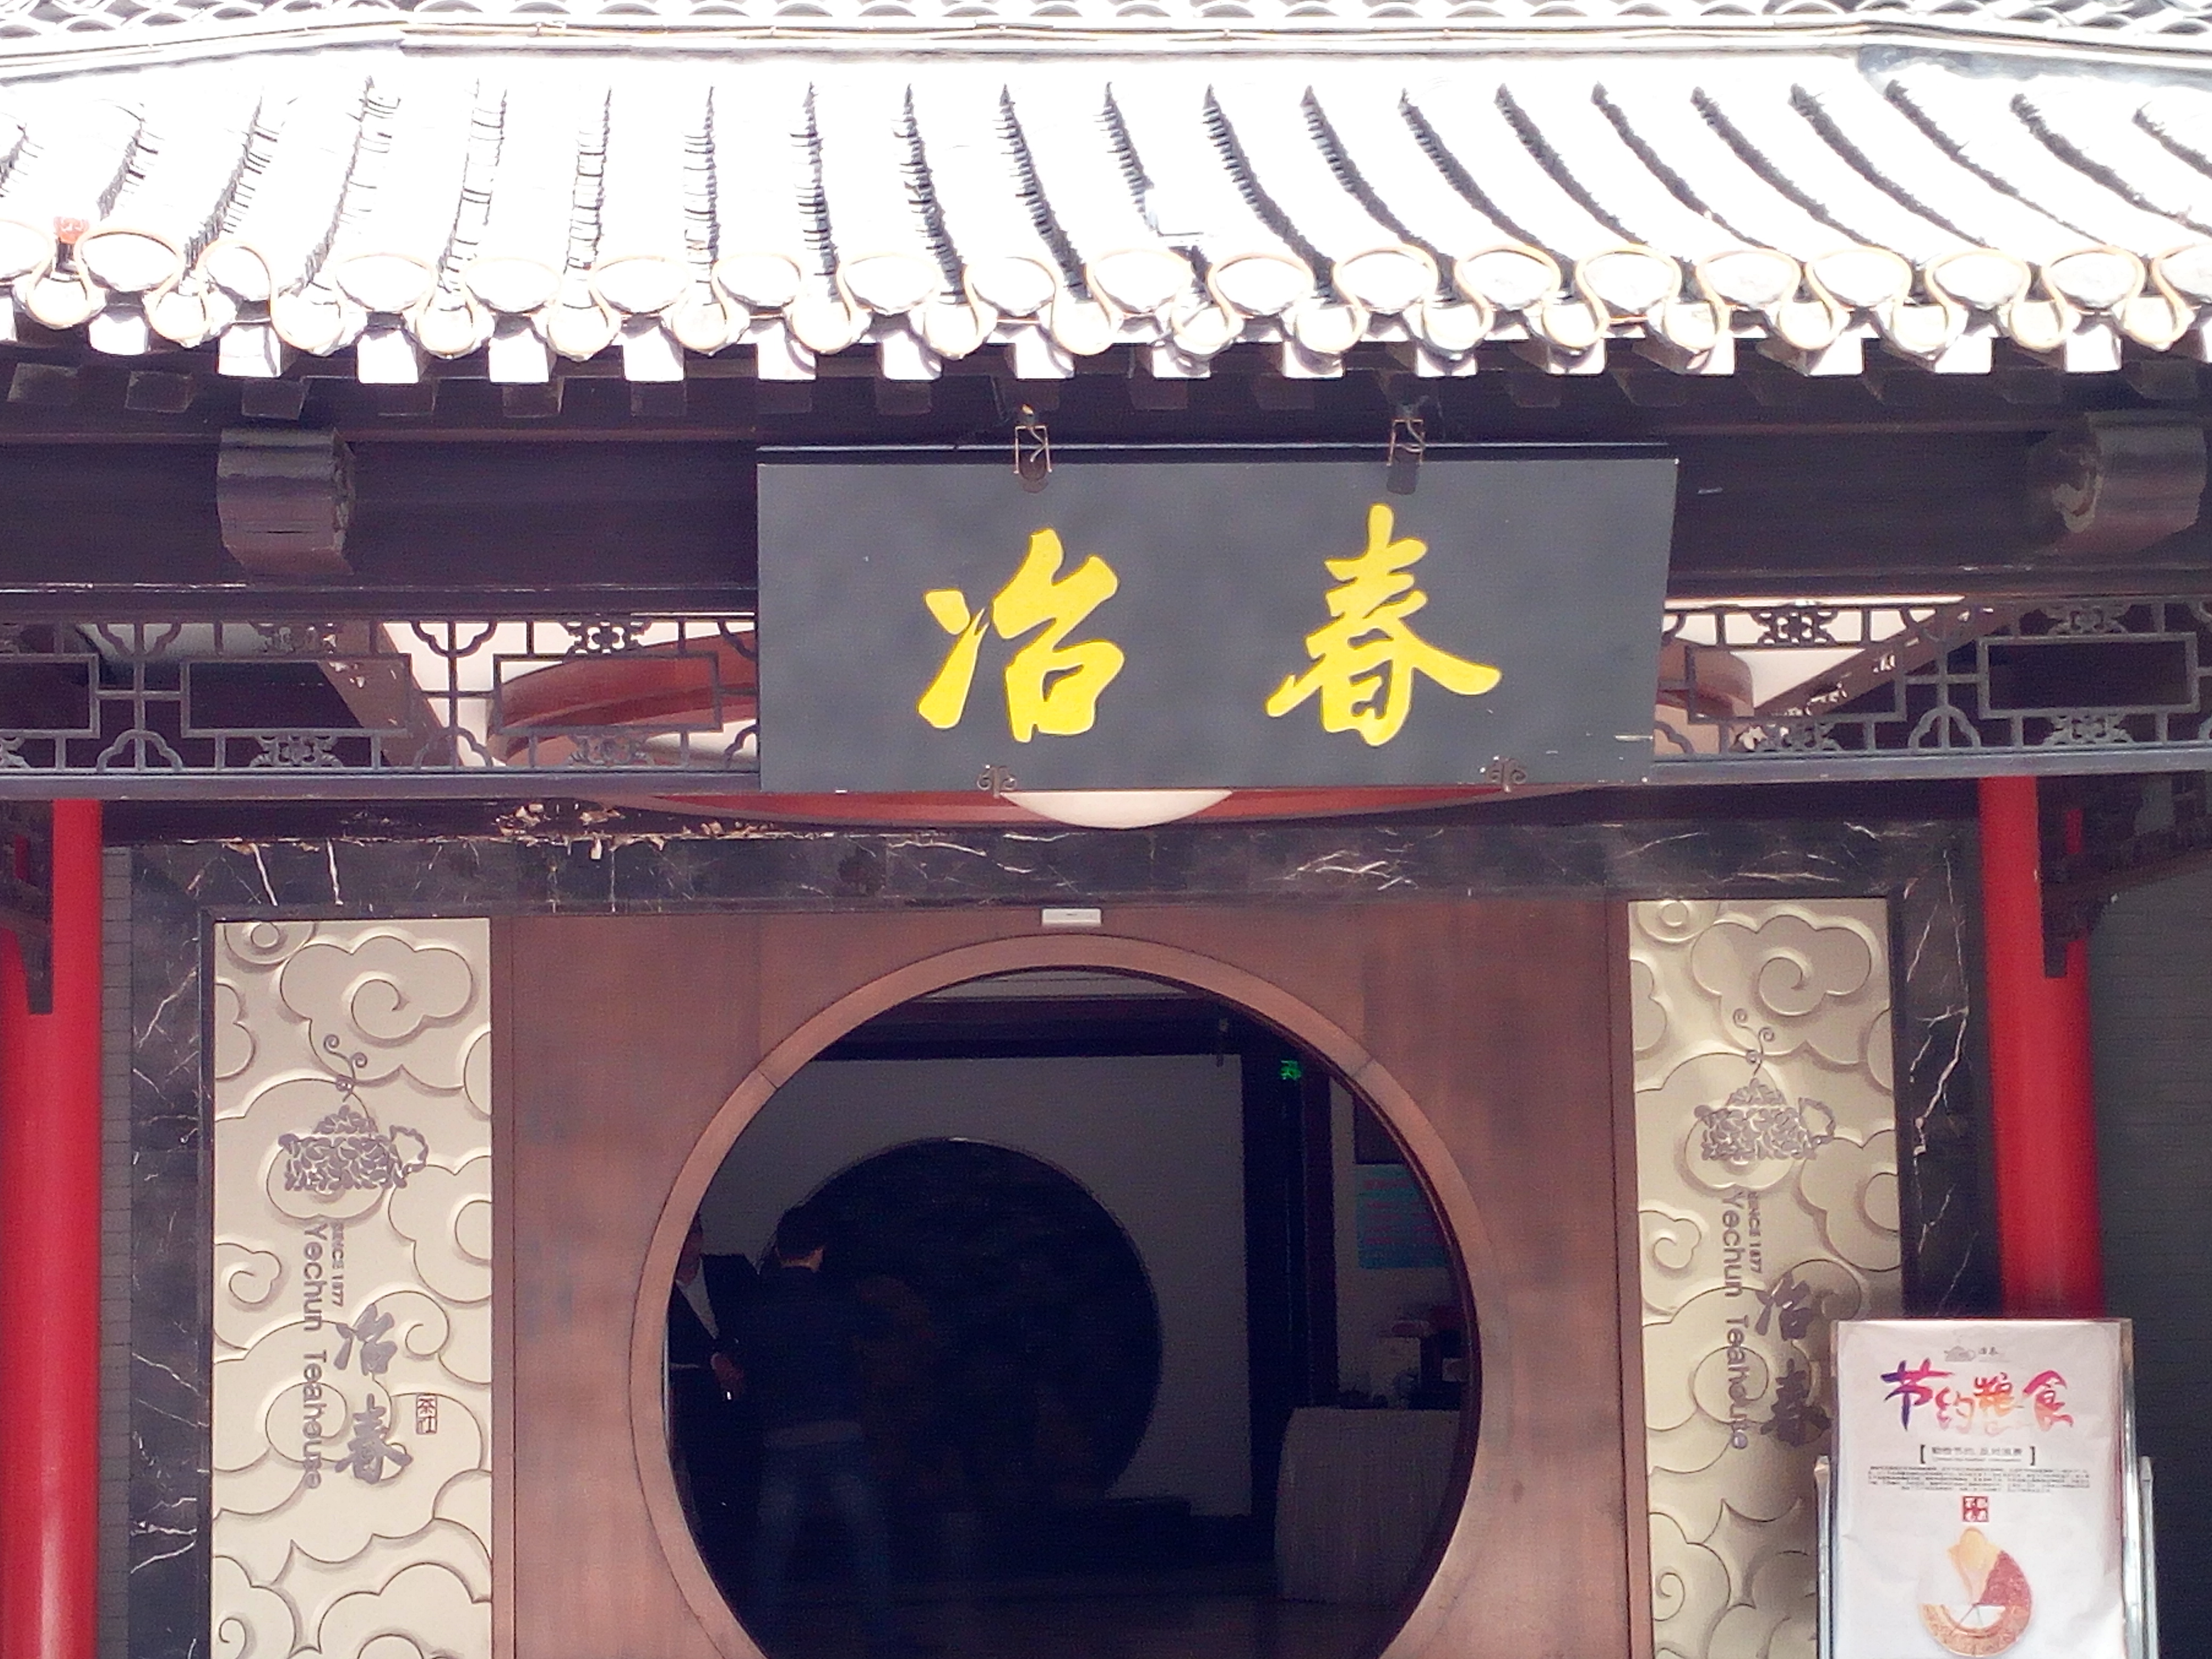 「吃在扬州●早茶篇」2：朱自清笔下的那家茶社——北门冶春茶社